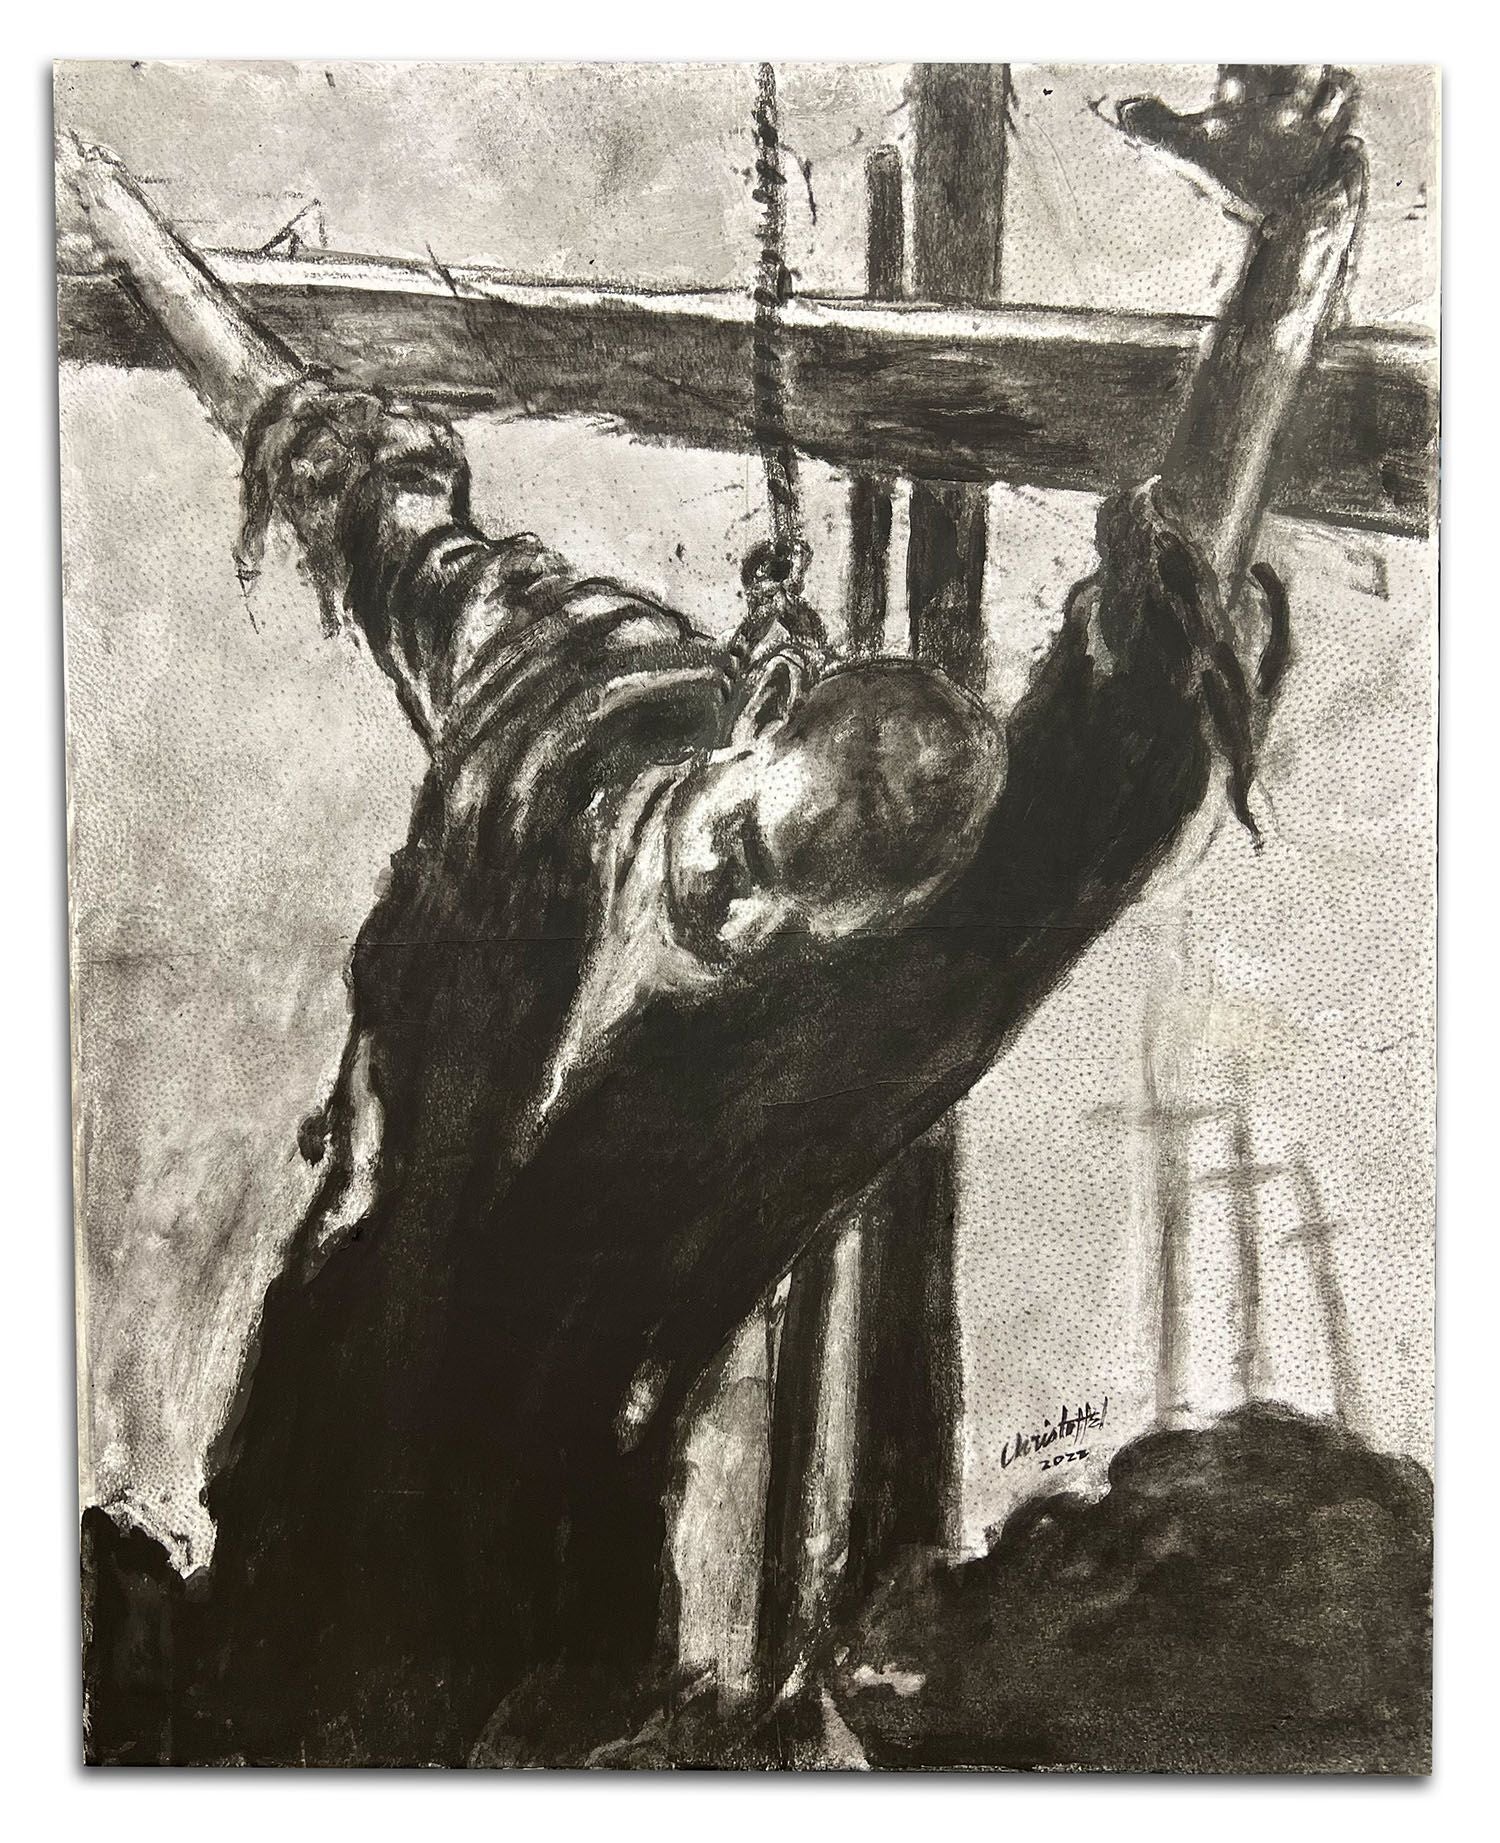 Dan Christoffel, "American Crucifix"